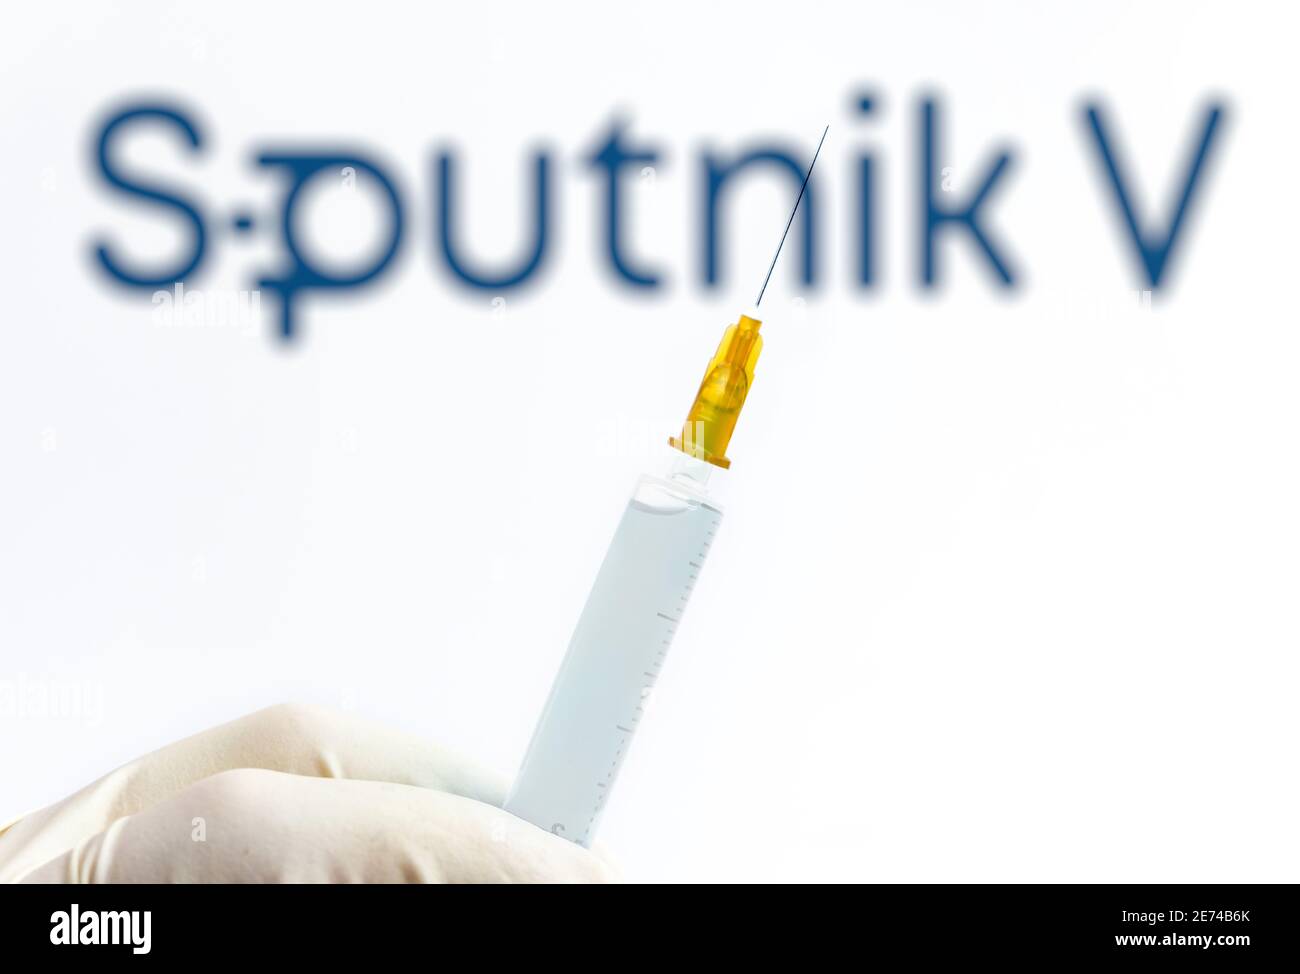 Vienne Autriche Jan.29 2021, seringue contre logo Spoutnik V flou, Spoutnik est le vaccin russe Covid19 développé par l'Institut Gamaleya Banque D'Images